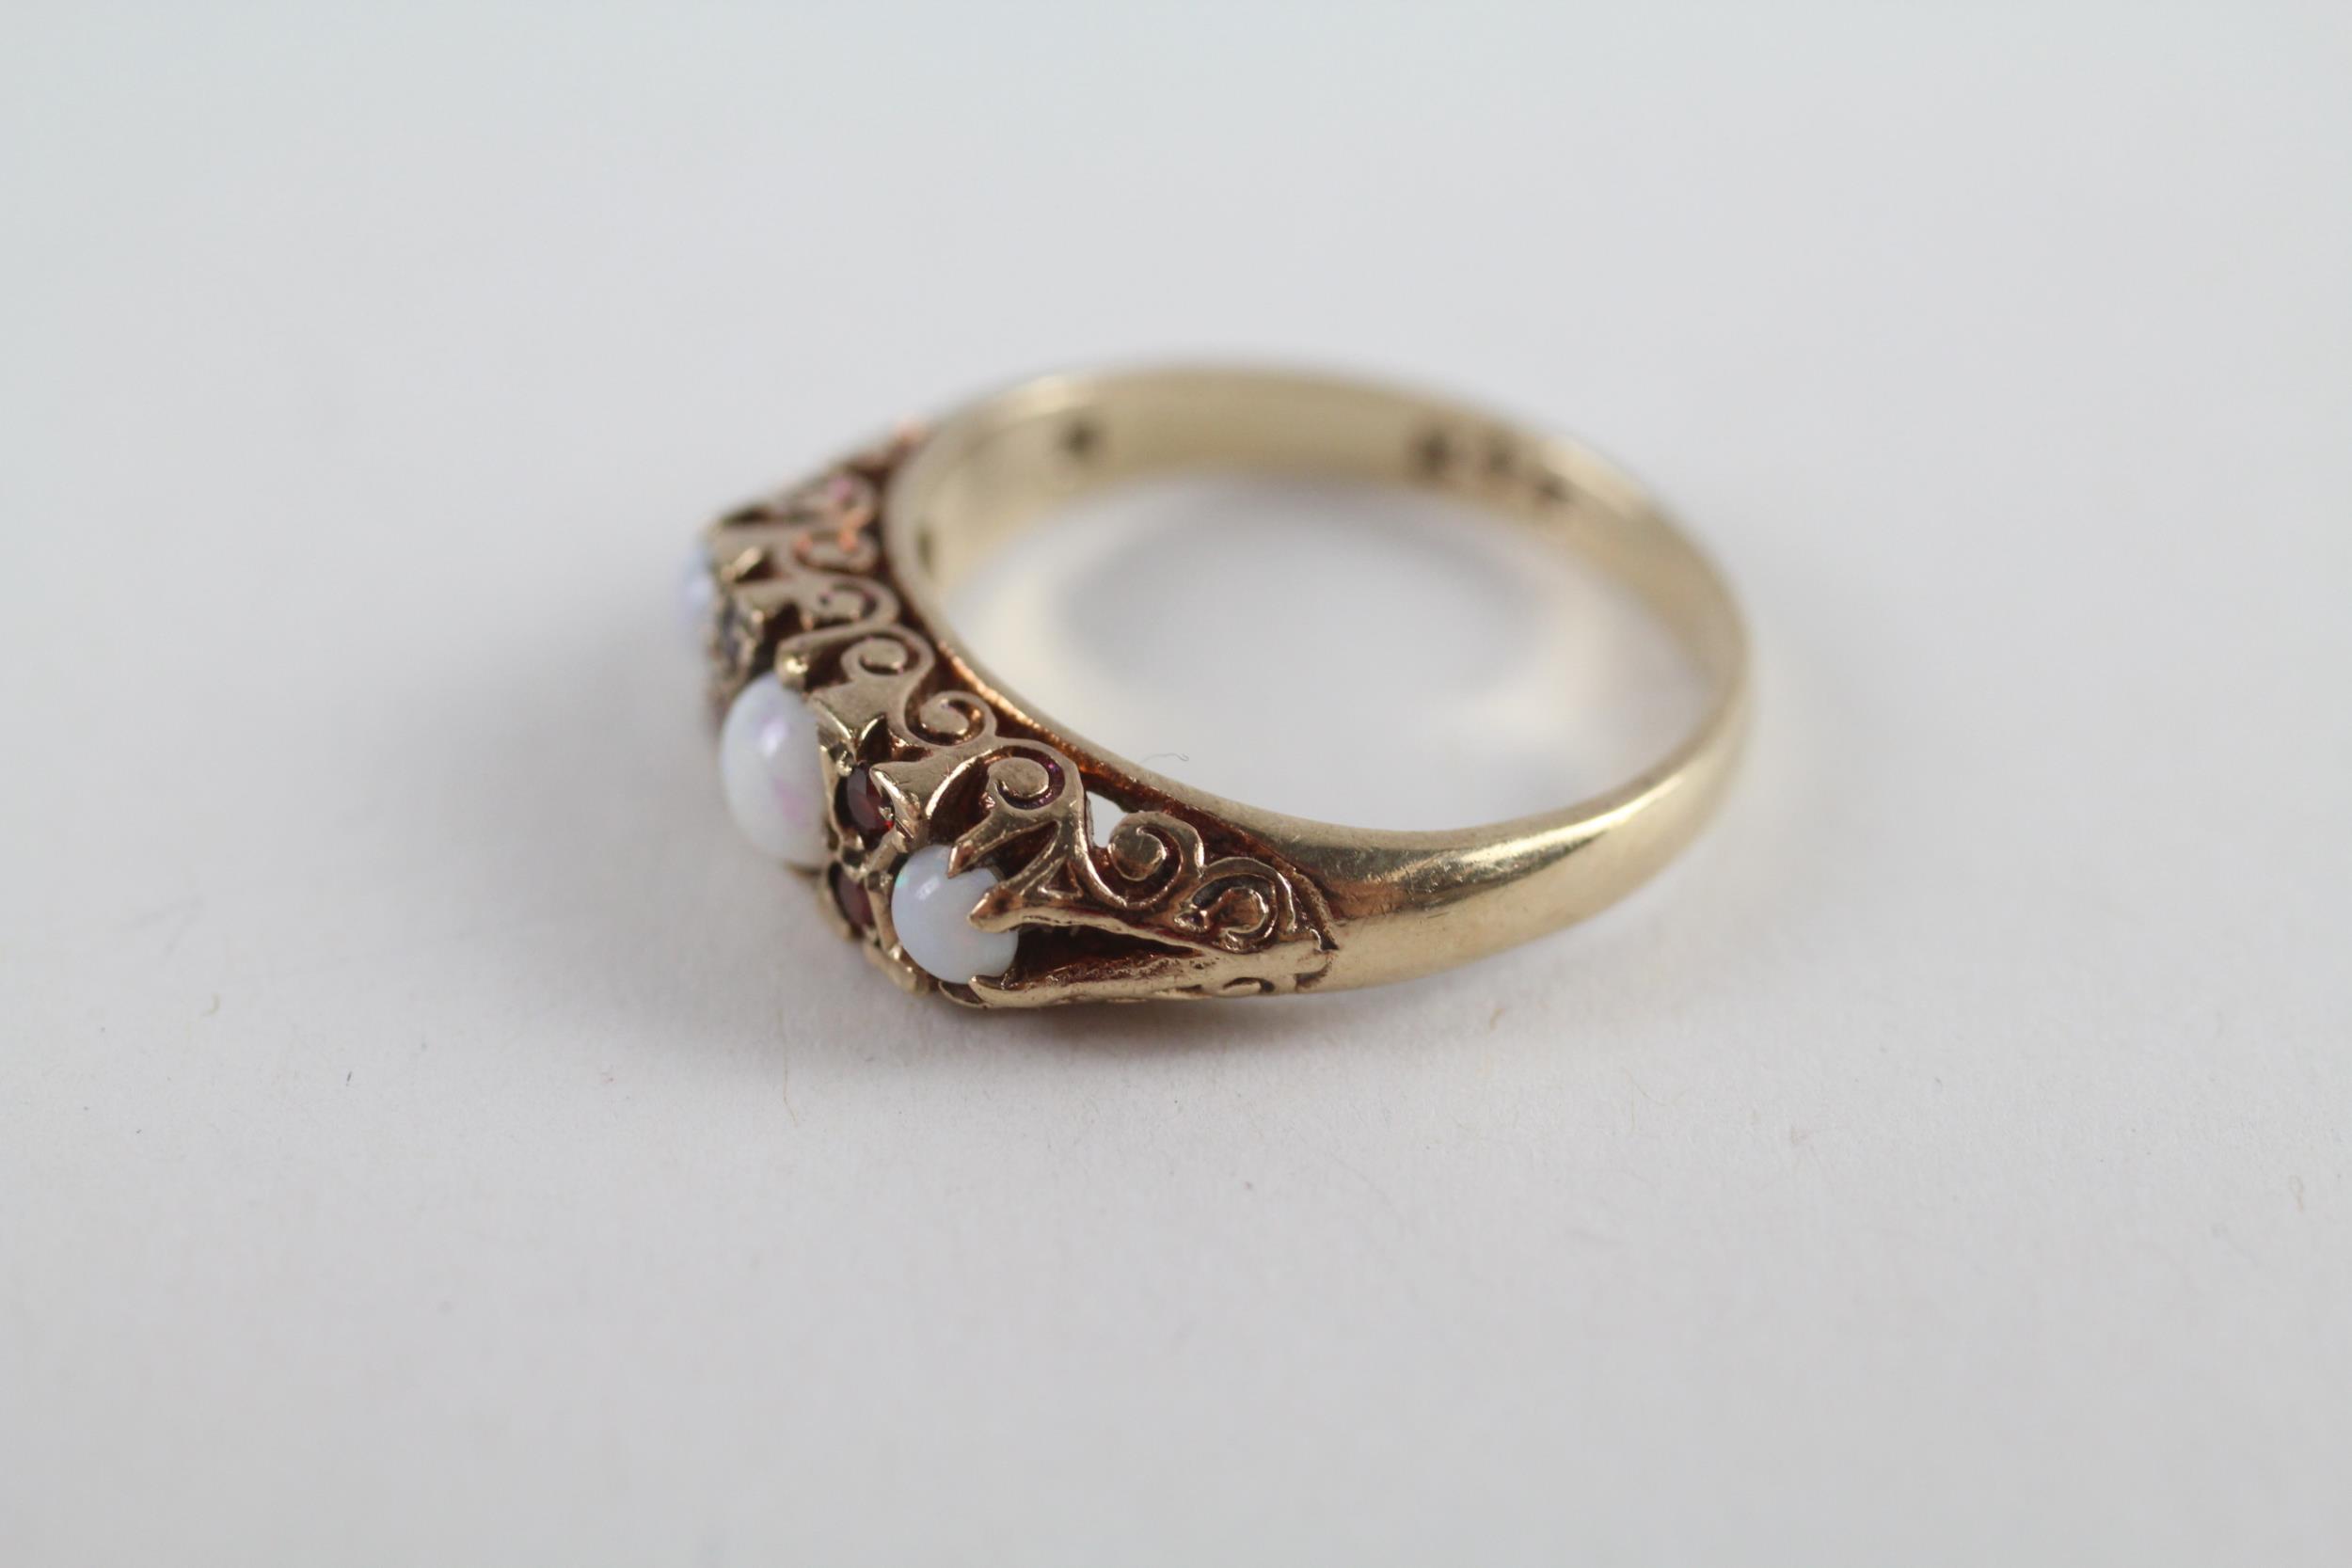 9ct gold opal & garnet vintage ring (2.7g) Size K - Image 3 of 5